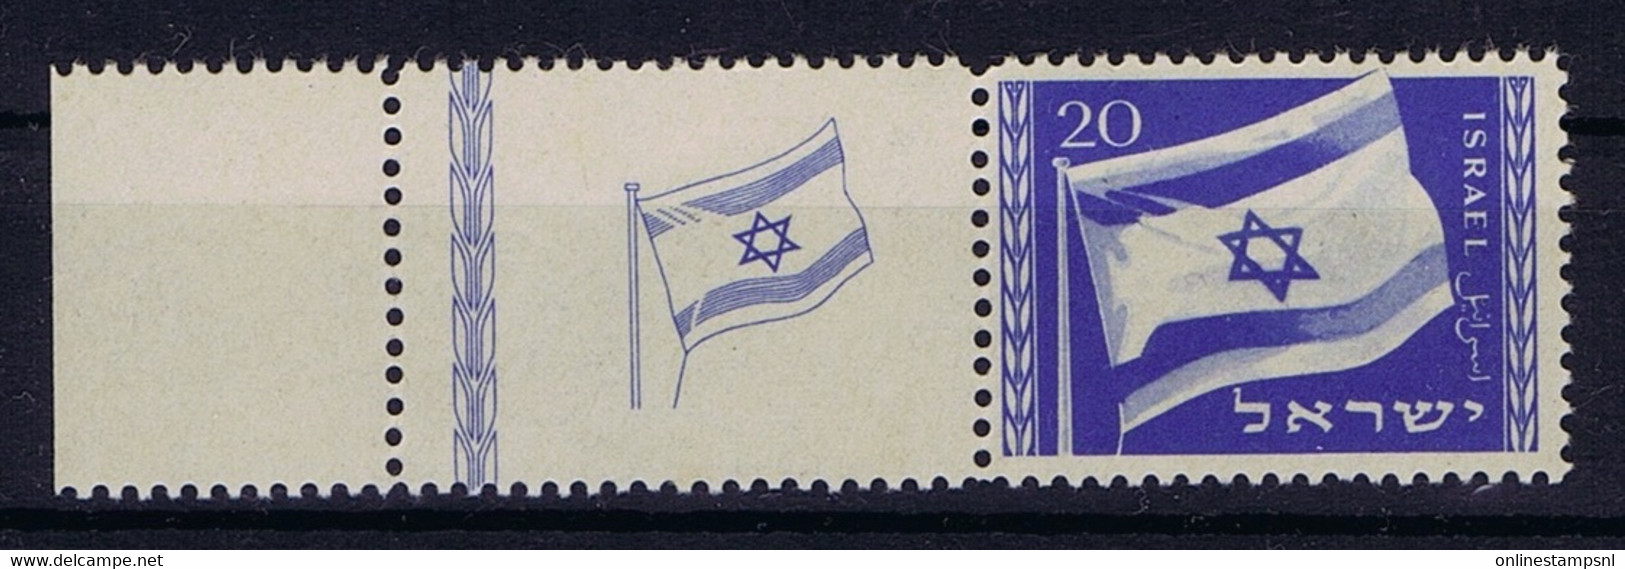 Israel: Mi  16 With Tab MNH/** Sans Charniere. Postfrisch 1949  Some Spots - Ongebruikt (met Tabs)